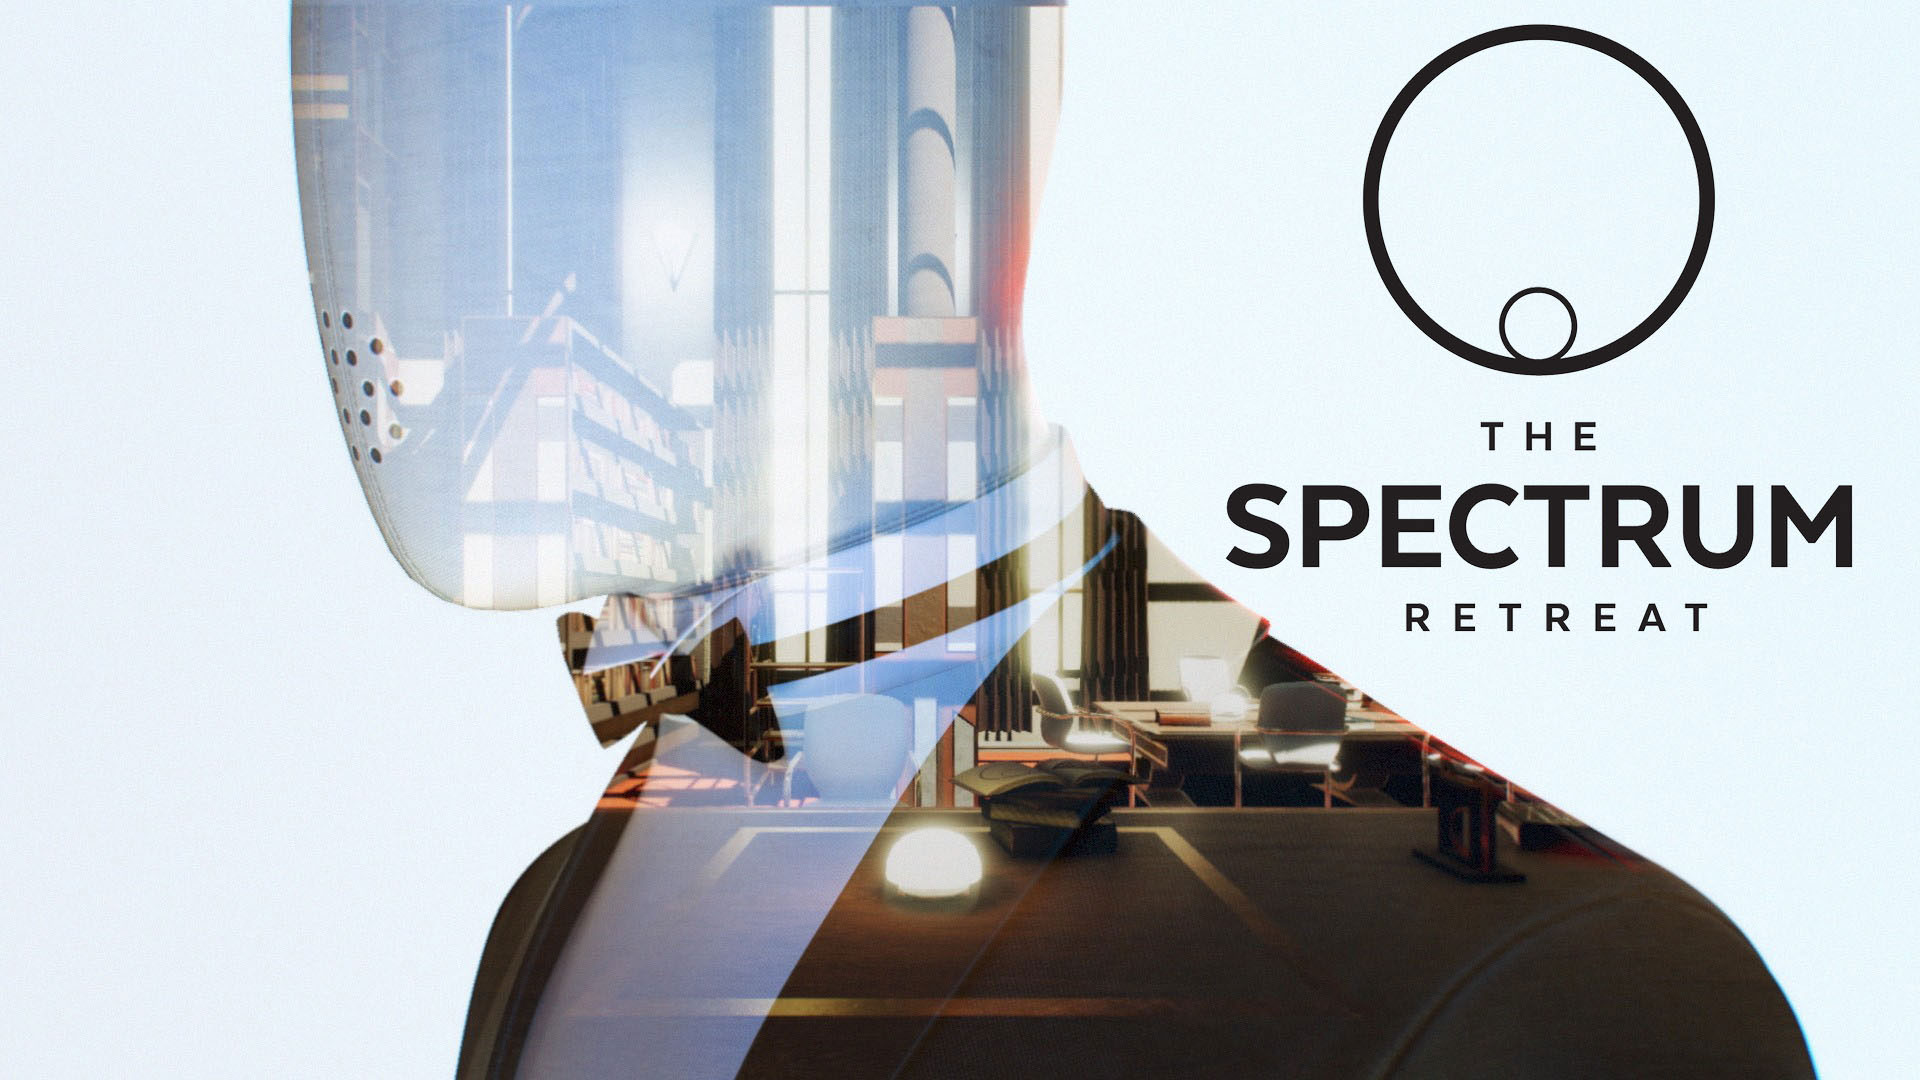 The Spectrum Retreat بازی رایگان بعدی فروشگاه اپیک گیمز خواهد بود